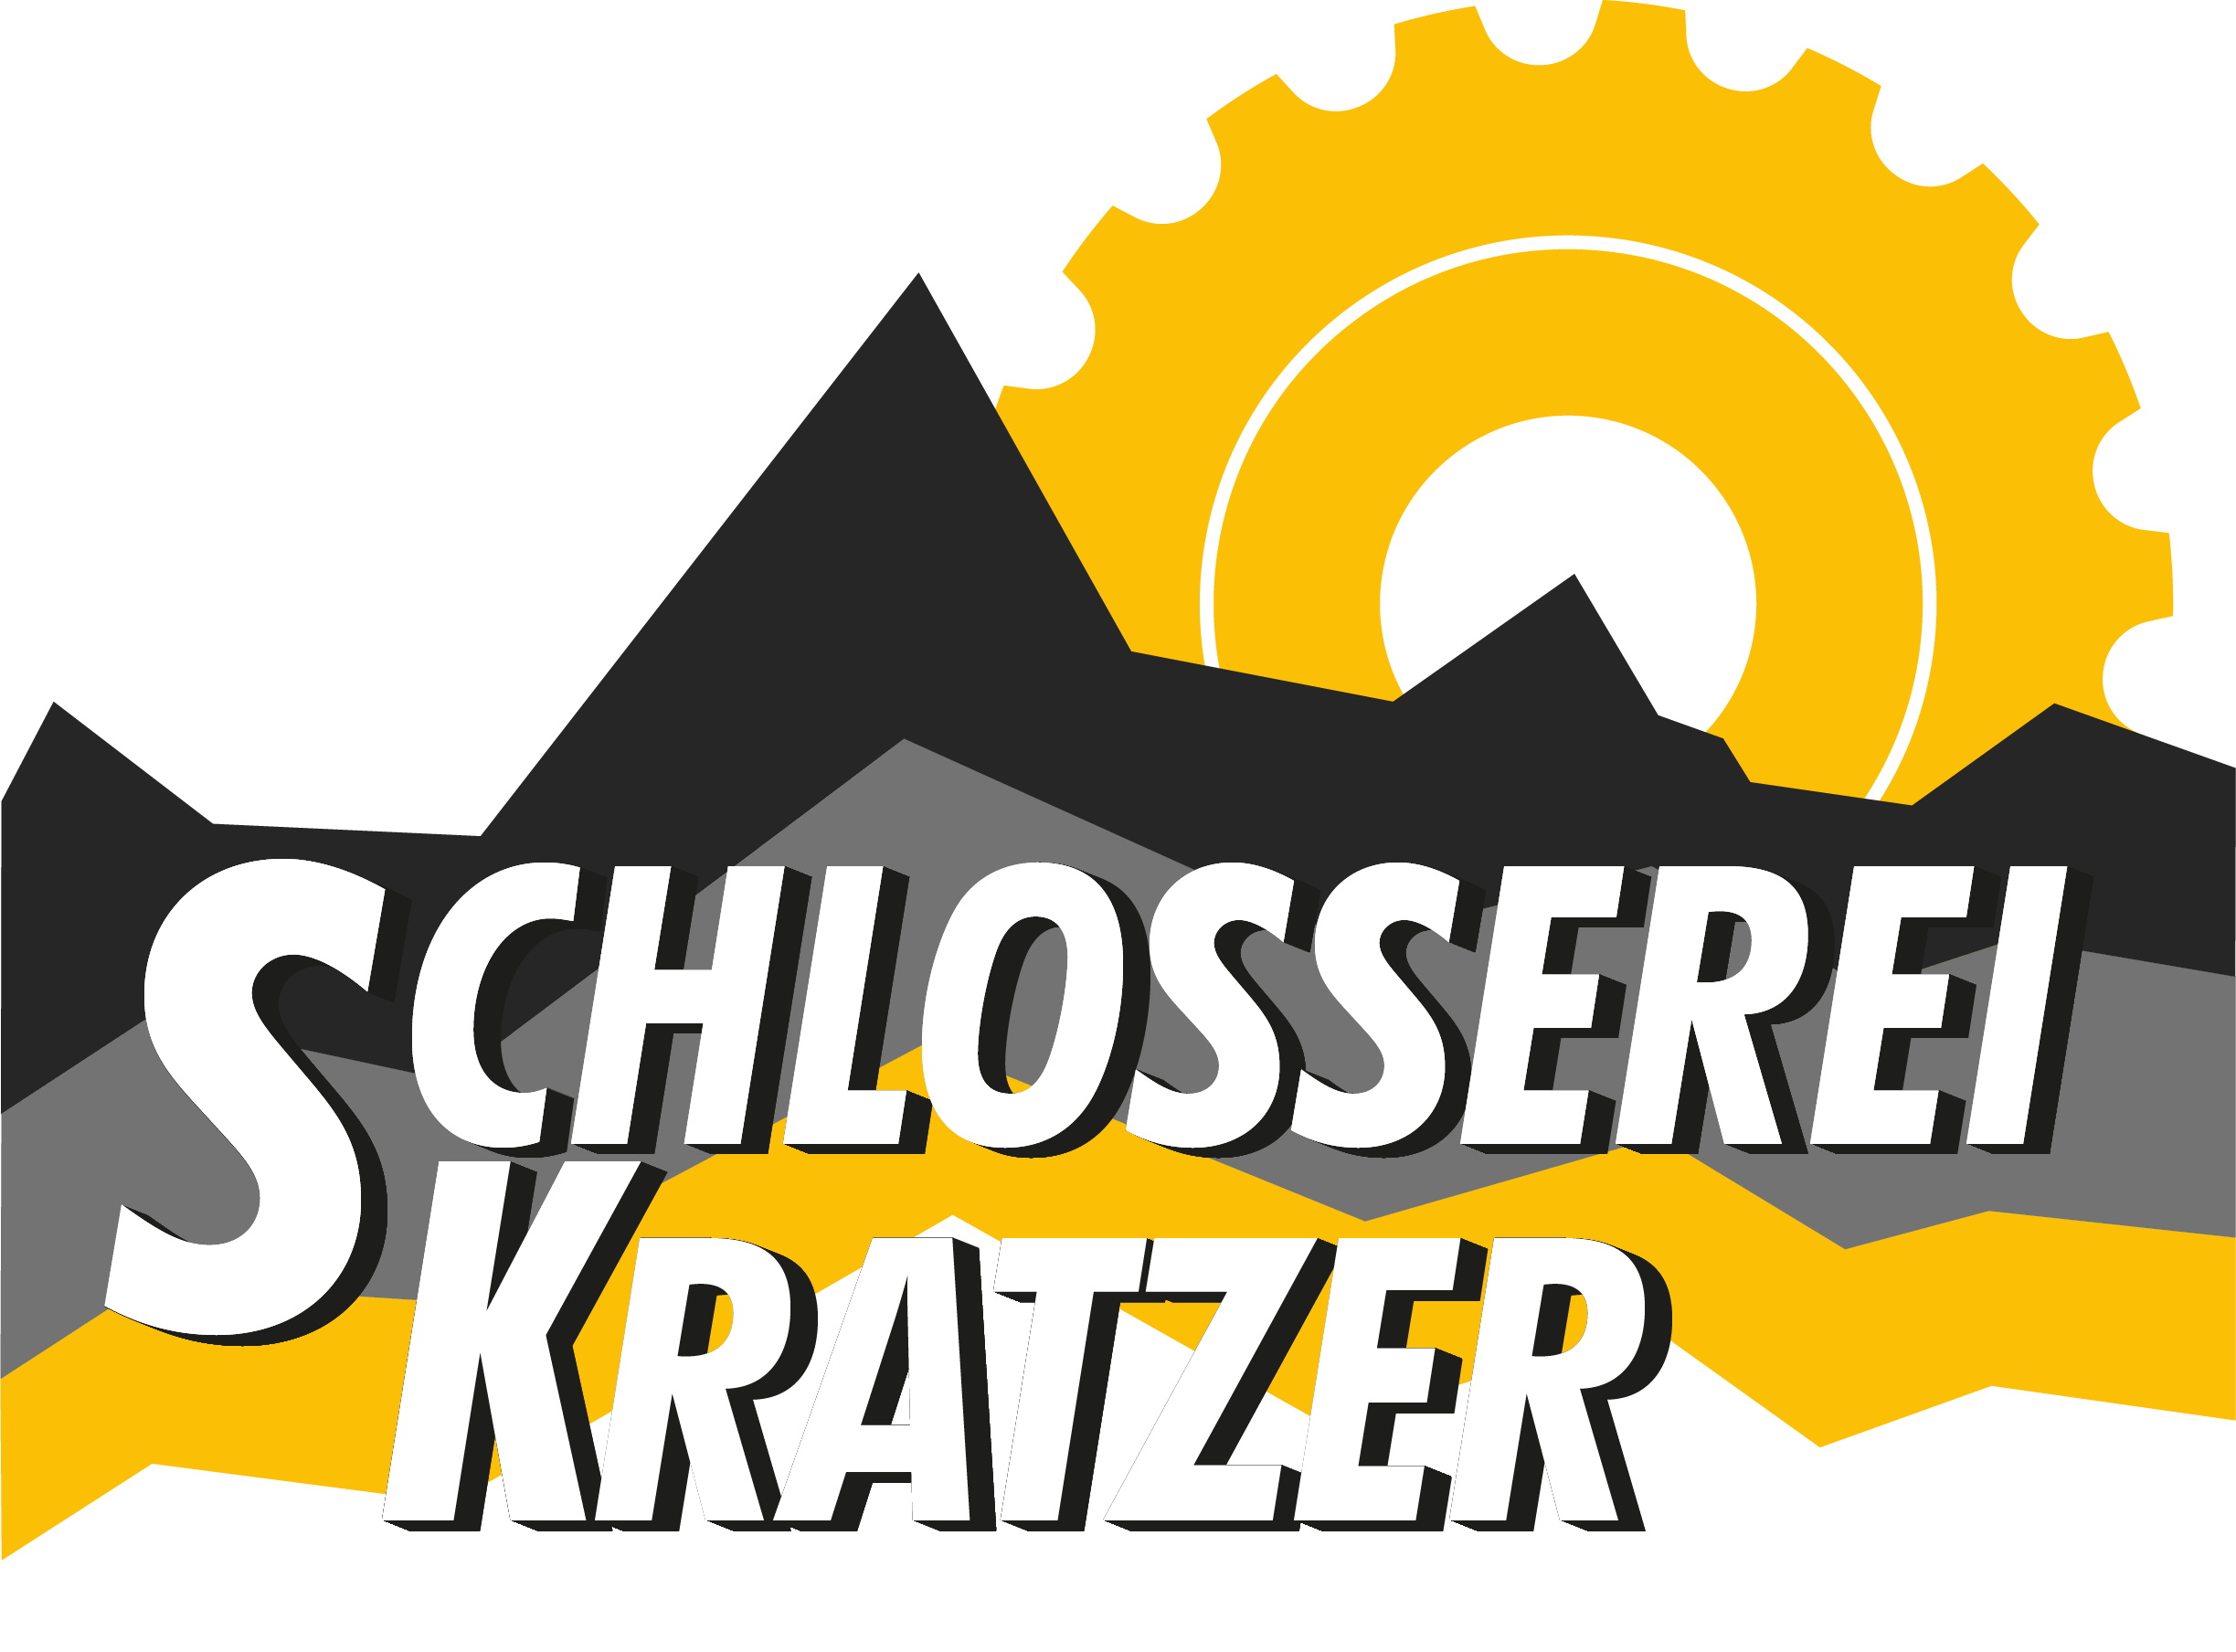 Schlosserei Siegfried Kratzer: Mechanische Fertigung von Präzisions-, Dreh- und Frästeilen | Montagearbeiten, Lohnfertigung, Reparaturen